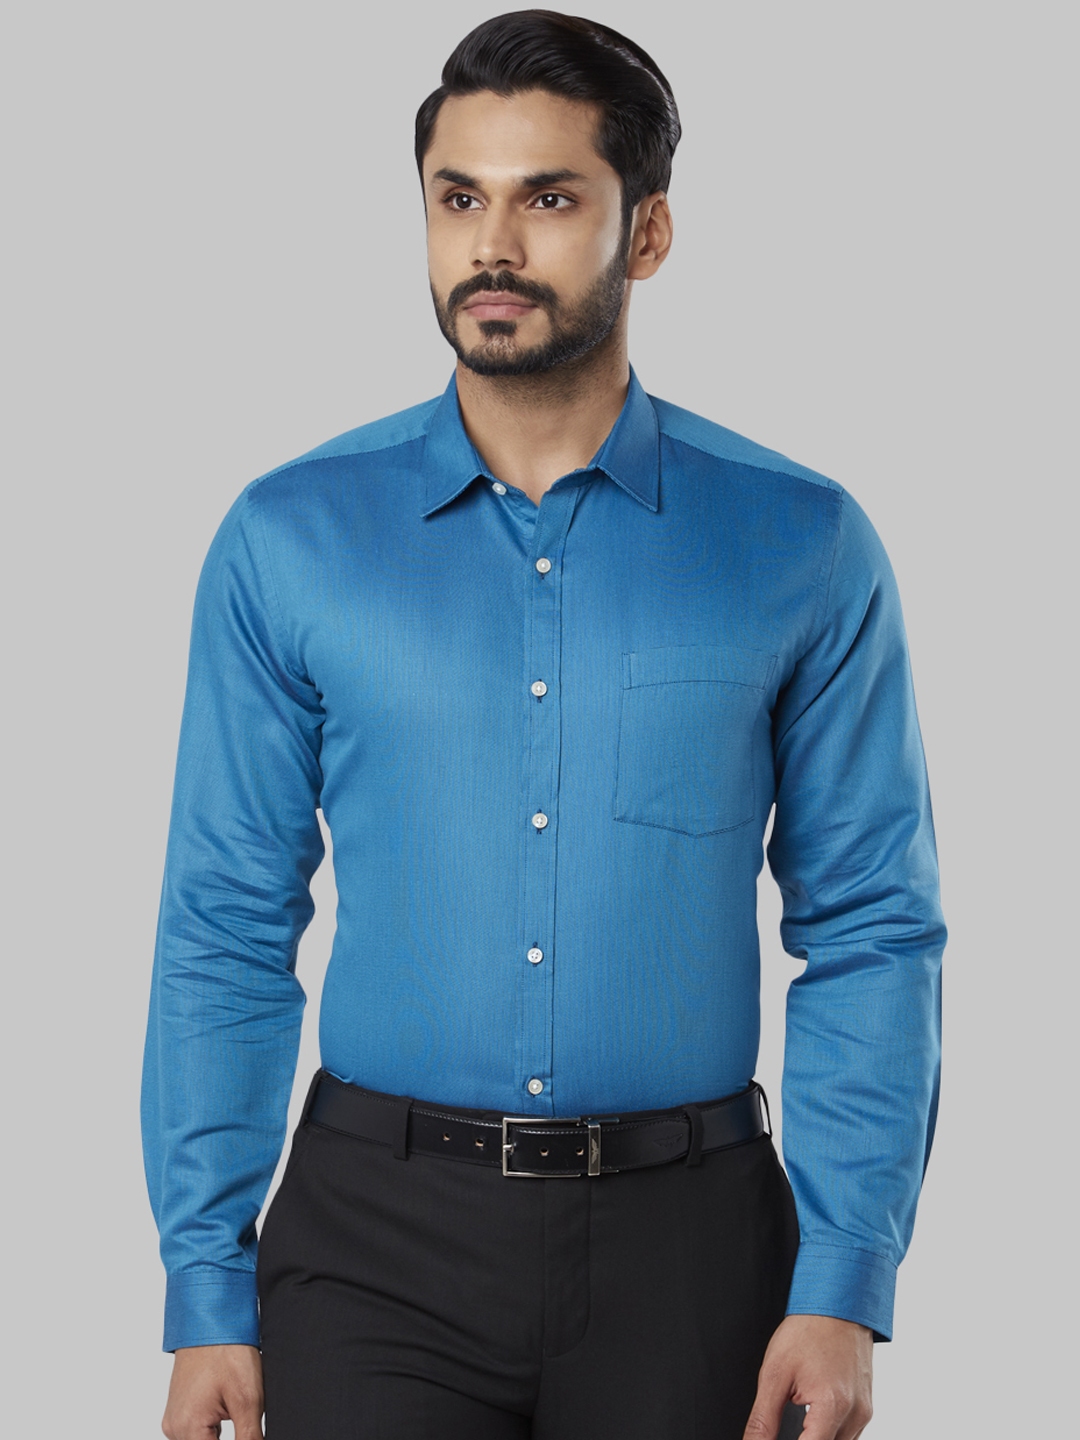 Buy Next Look Men Blue Regular Fit Solid Formal Shirt - Shirts for Men ...